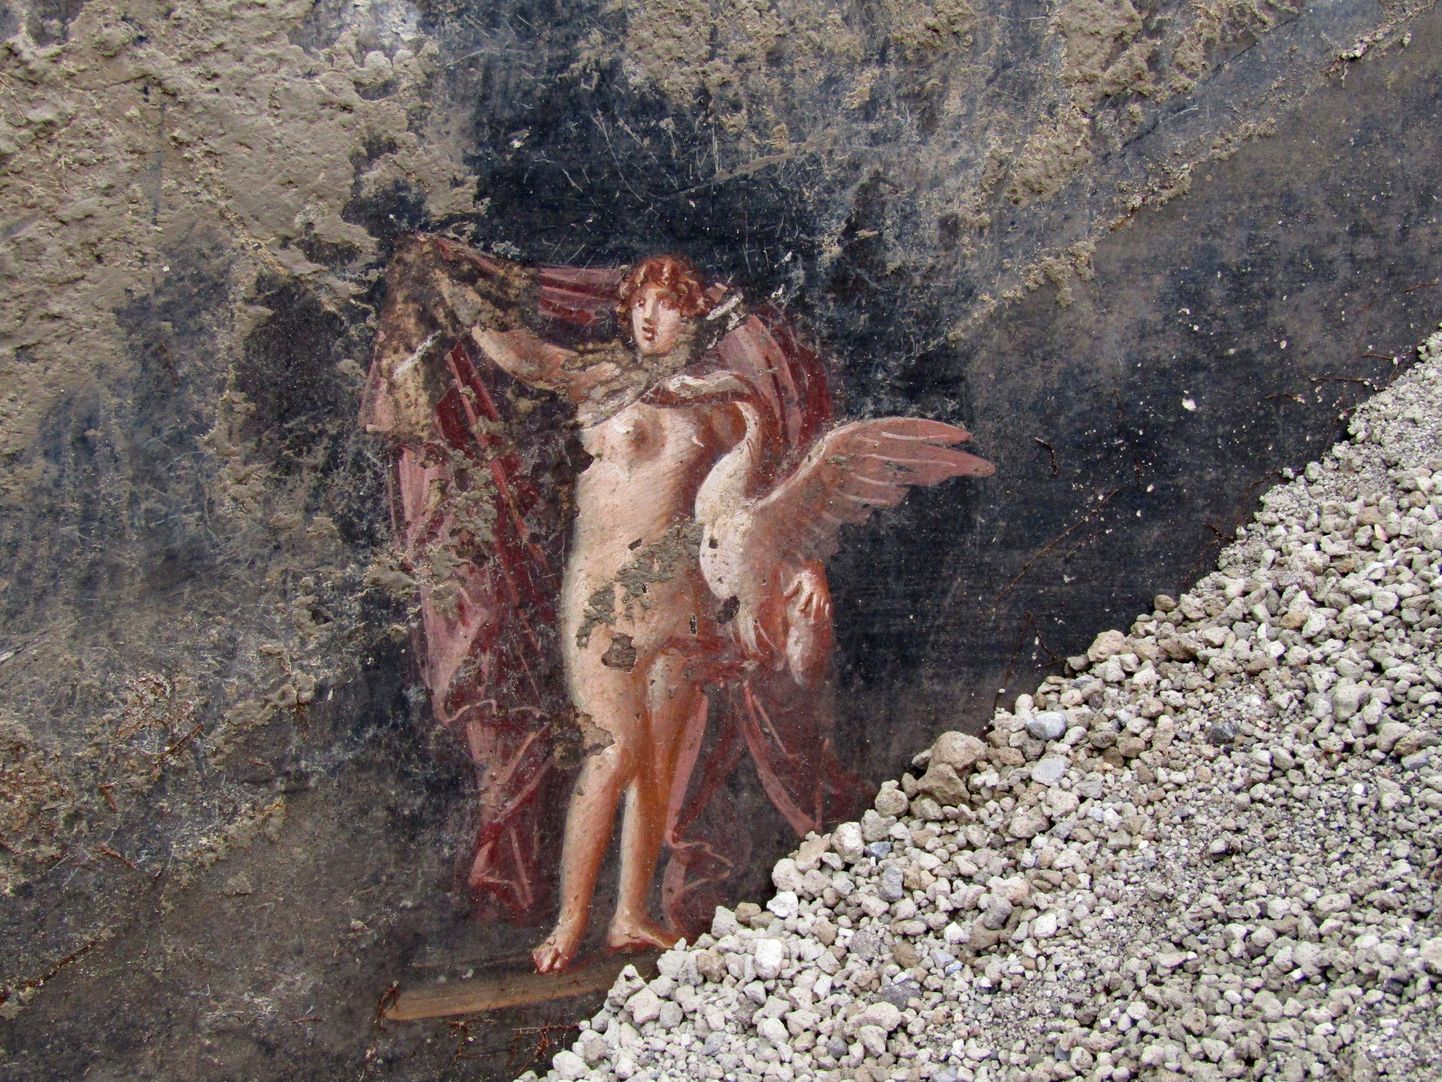 Arheoloogid leidsid Vana-Rooma linnas Pompeis väljakaevamisi tehes musta värvi seintega peosaali, millel on näha ka Trooja sõjaga seotud mütoloogilisi tegelasi